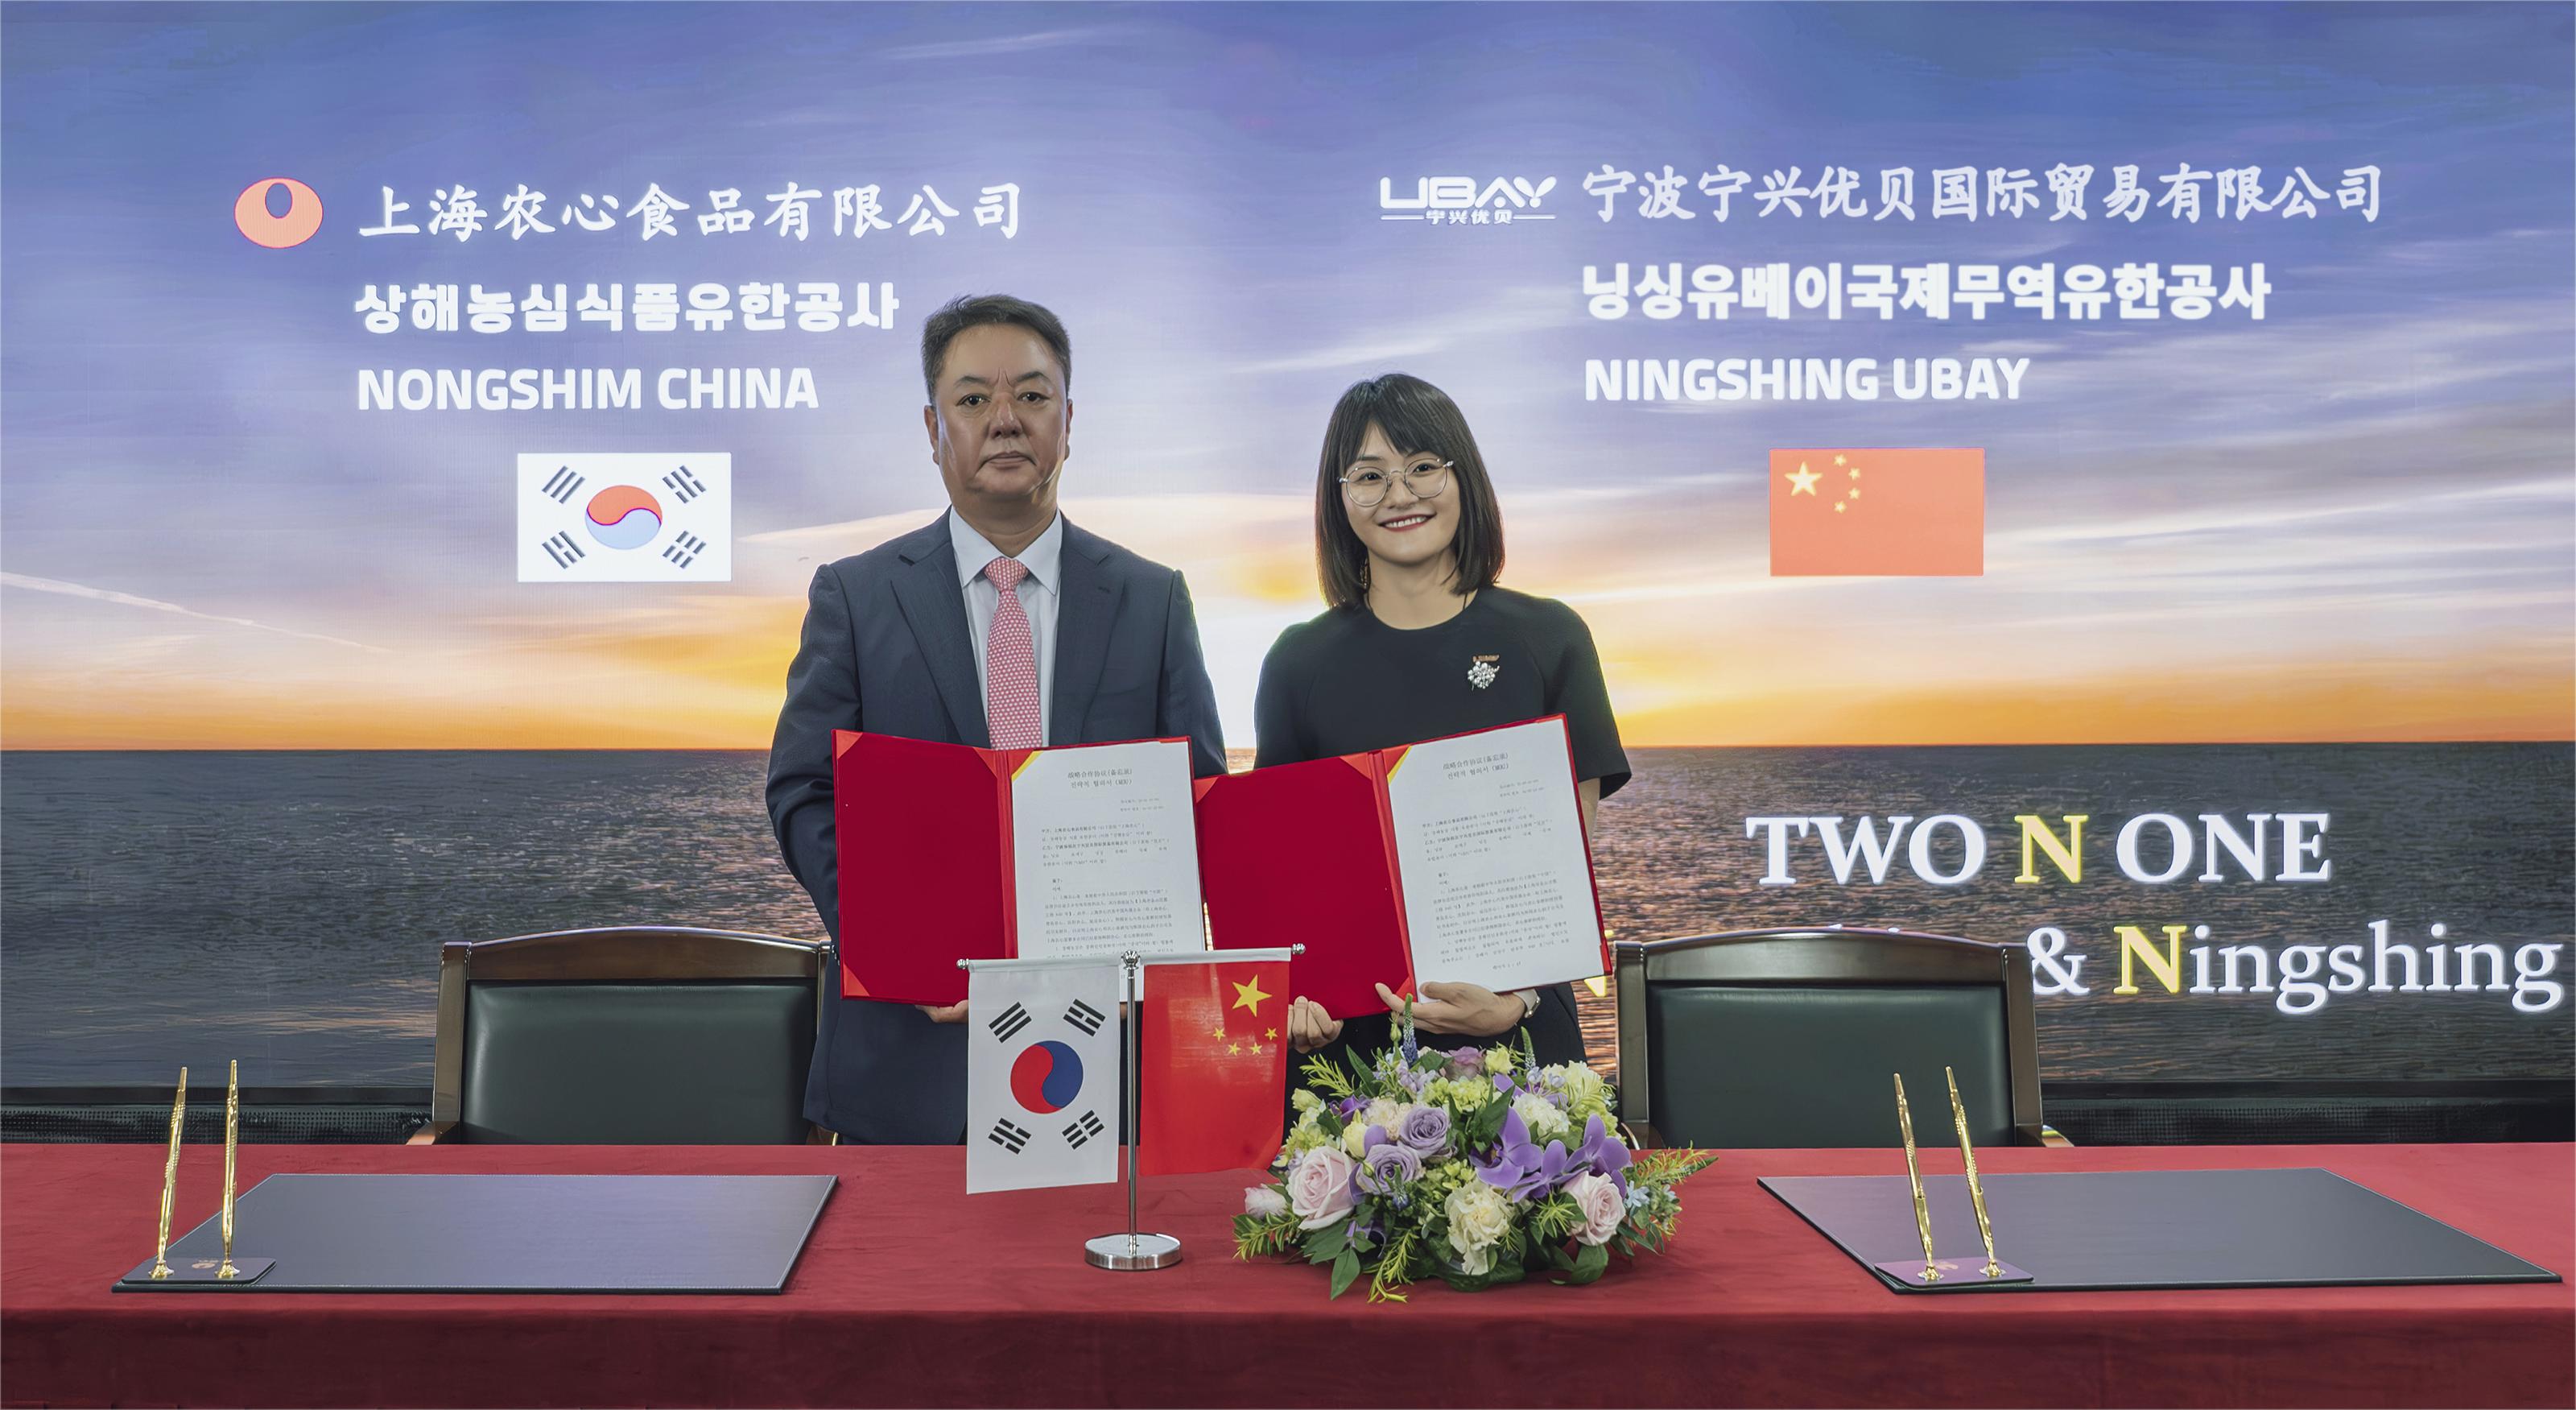 Ningshing Ubay and Korean Nongshim Forge Strategic Partnership